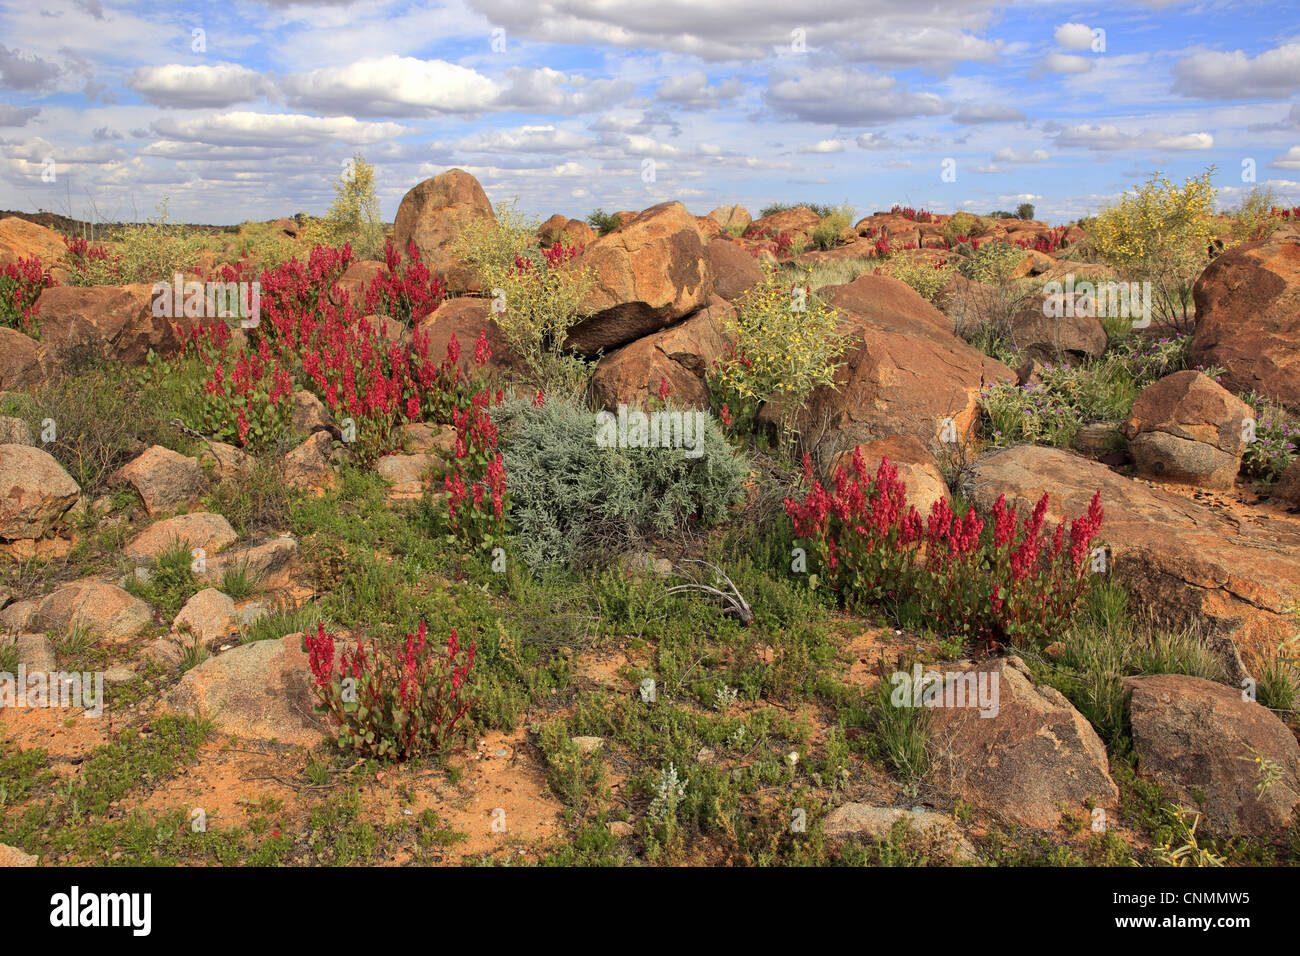 Bladderdock Rumex vesicarius introduced species flowering growing amongst rocks desert habitat Sturt N.P New South Wales Stock Photo